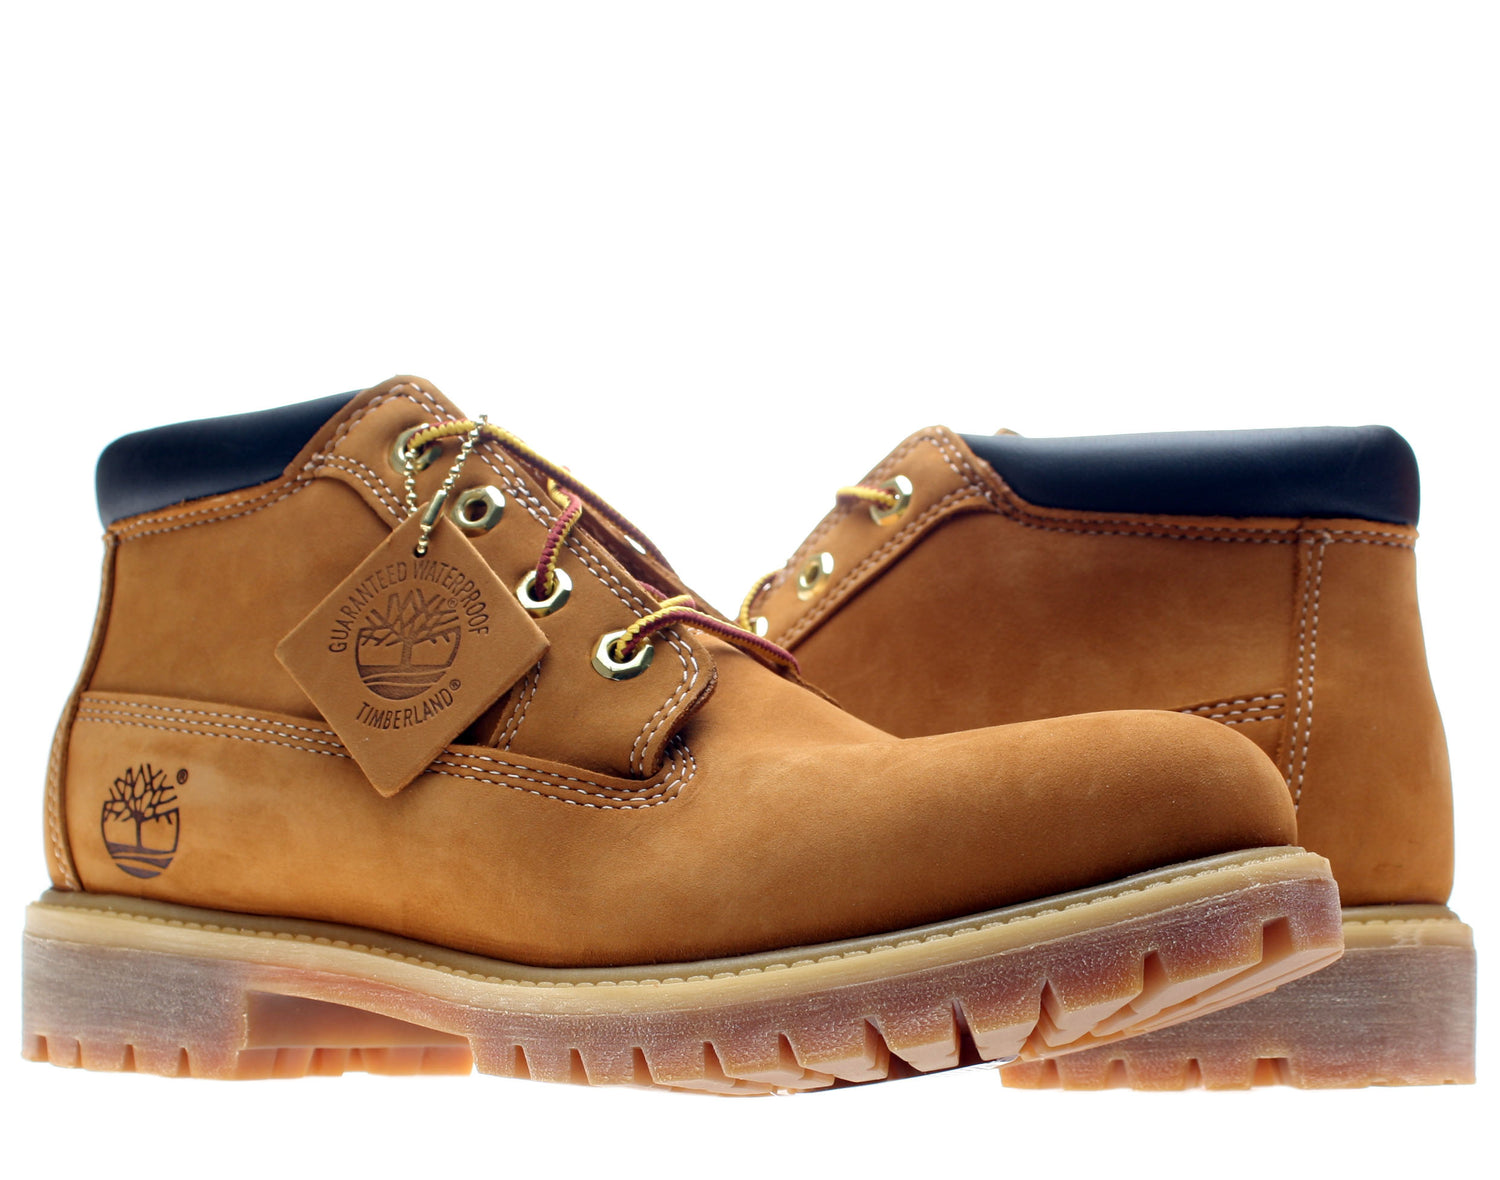 Timberland Premium Waterproof Chukka Men's Boots